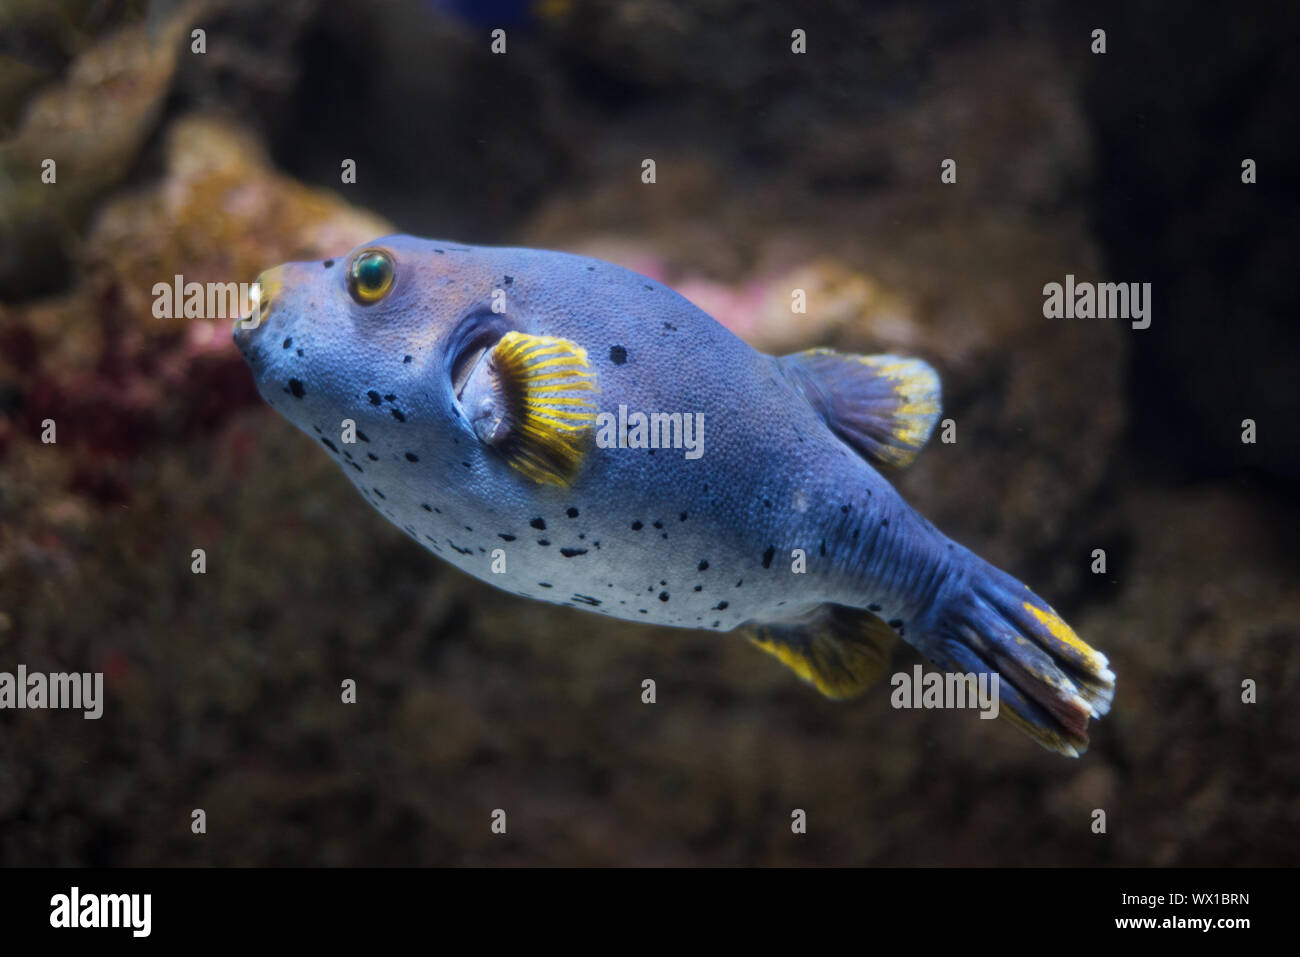 Puffer fish (Tetraodontidae). Stock Photo